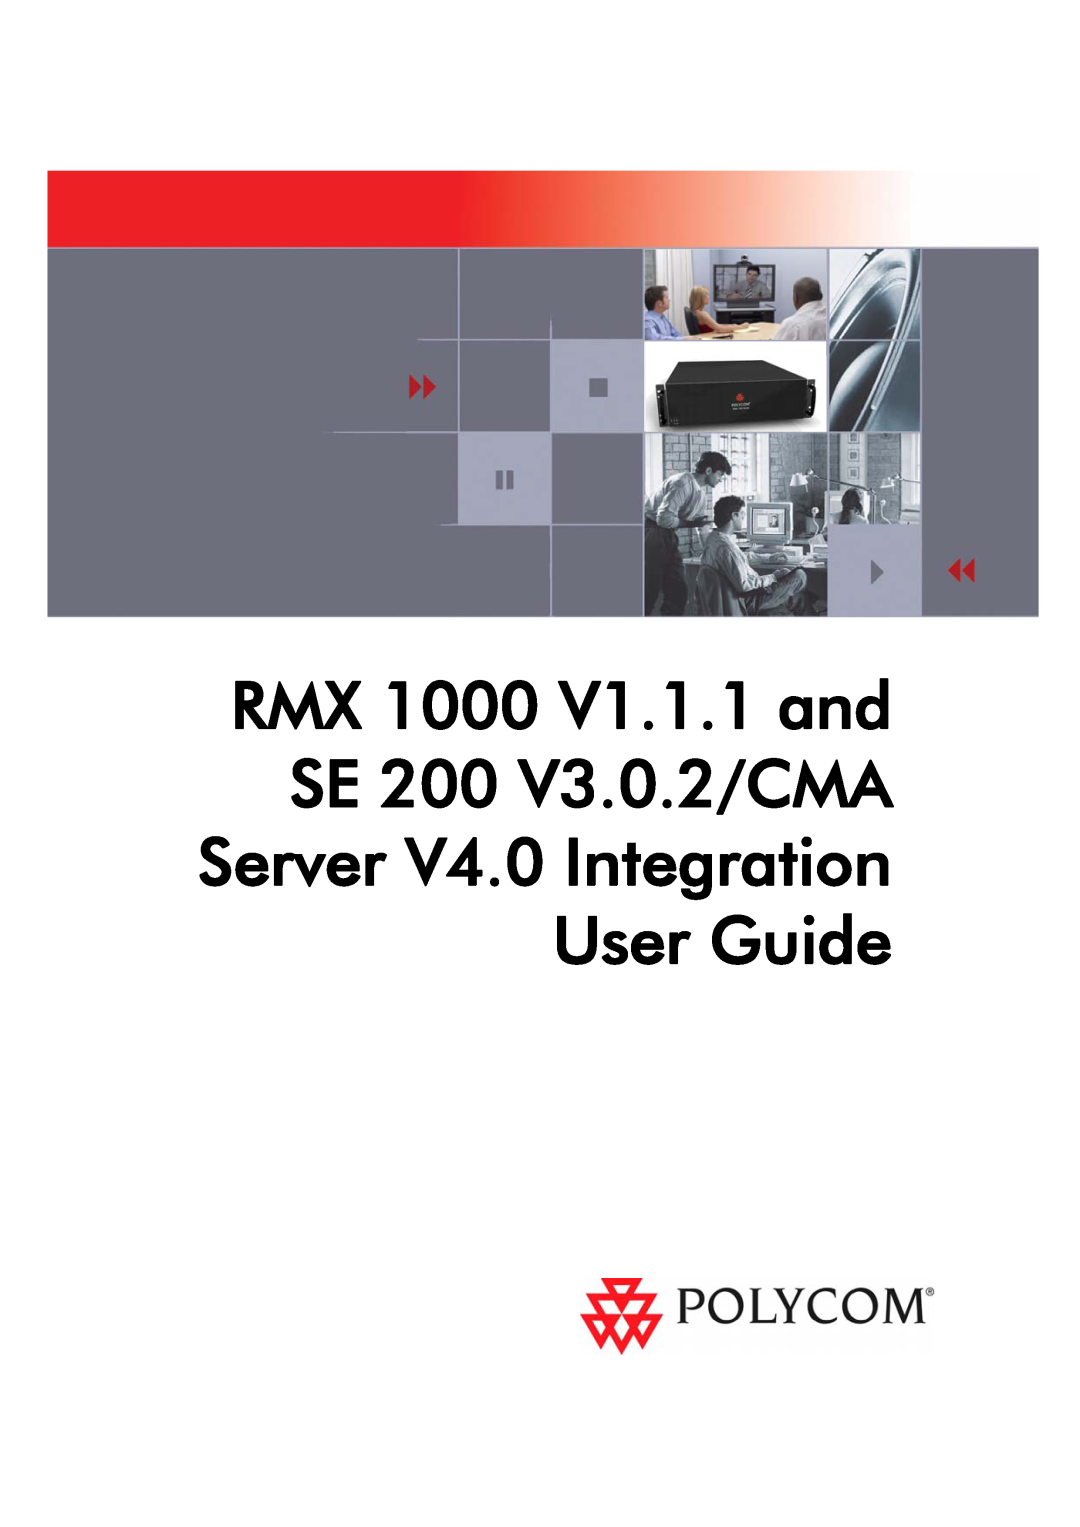 Polycom manual RMX 1000 V1.1.1 and SE 200 V3.0.2/CMA Server V4.0 Integration, User Guide 